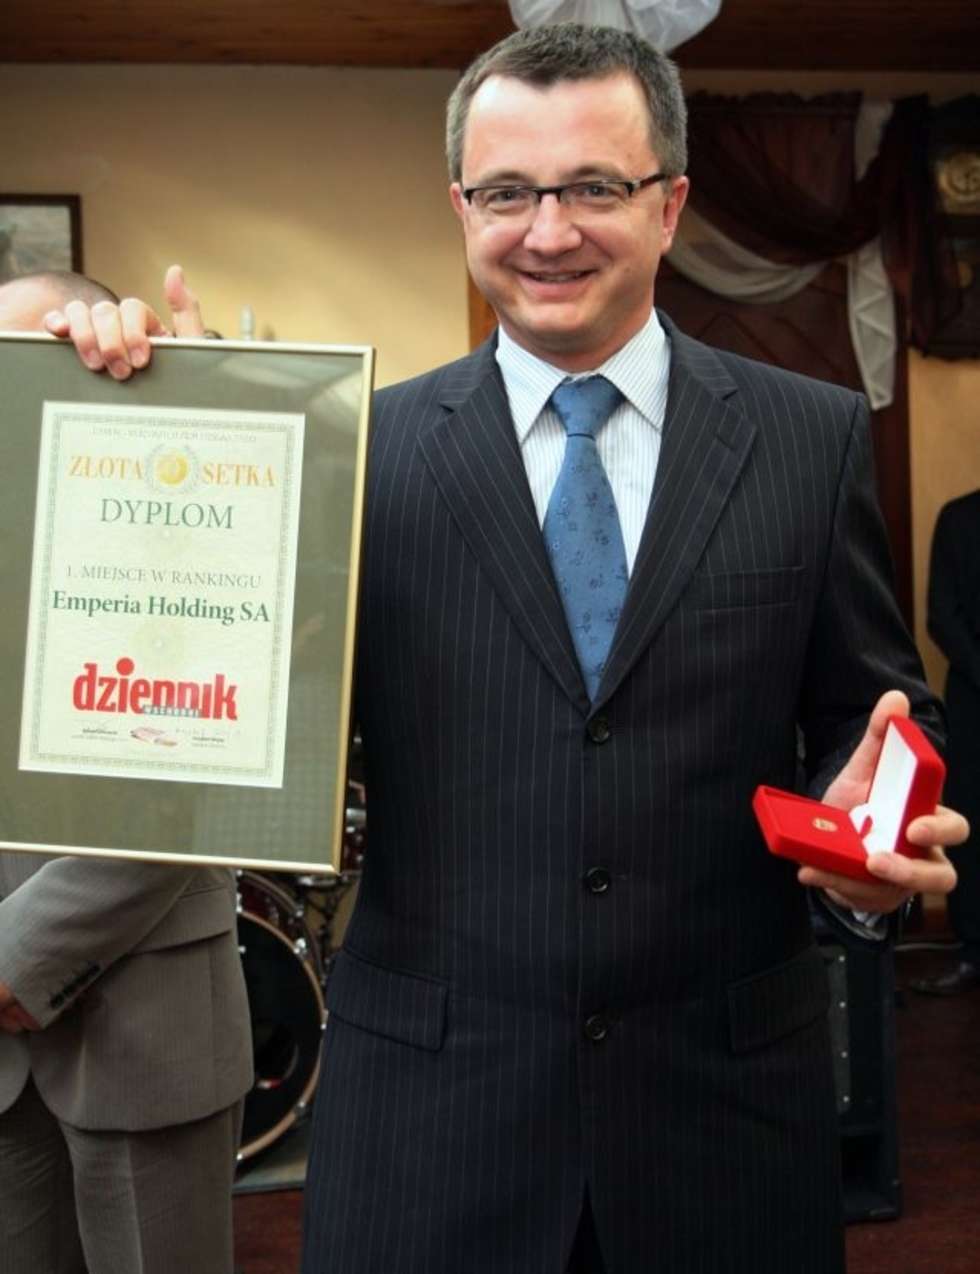  Ogloszenie wyników rankingu najwiekszych firm lubelszczyzny "Zlota Setka". Artur Kawa, prezes Emperia Holding - Firma Roku 2006 r.

